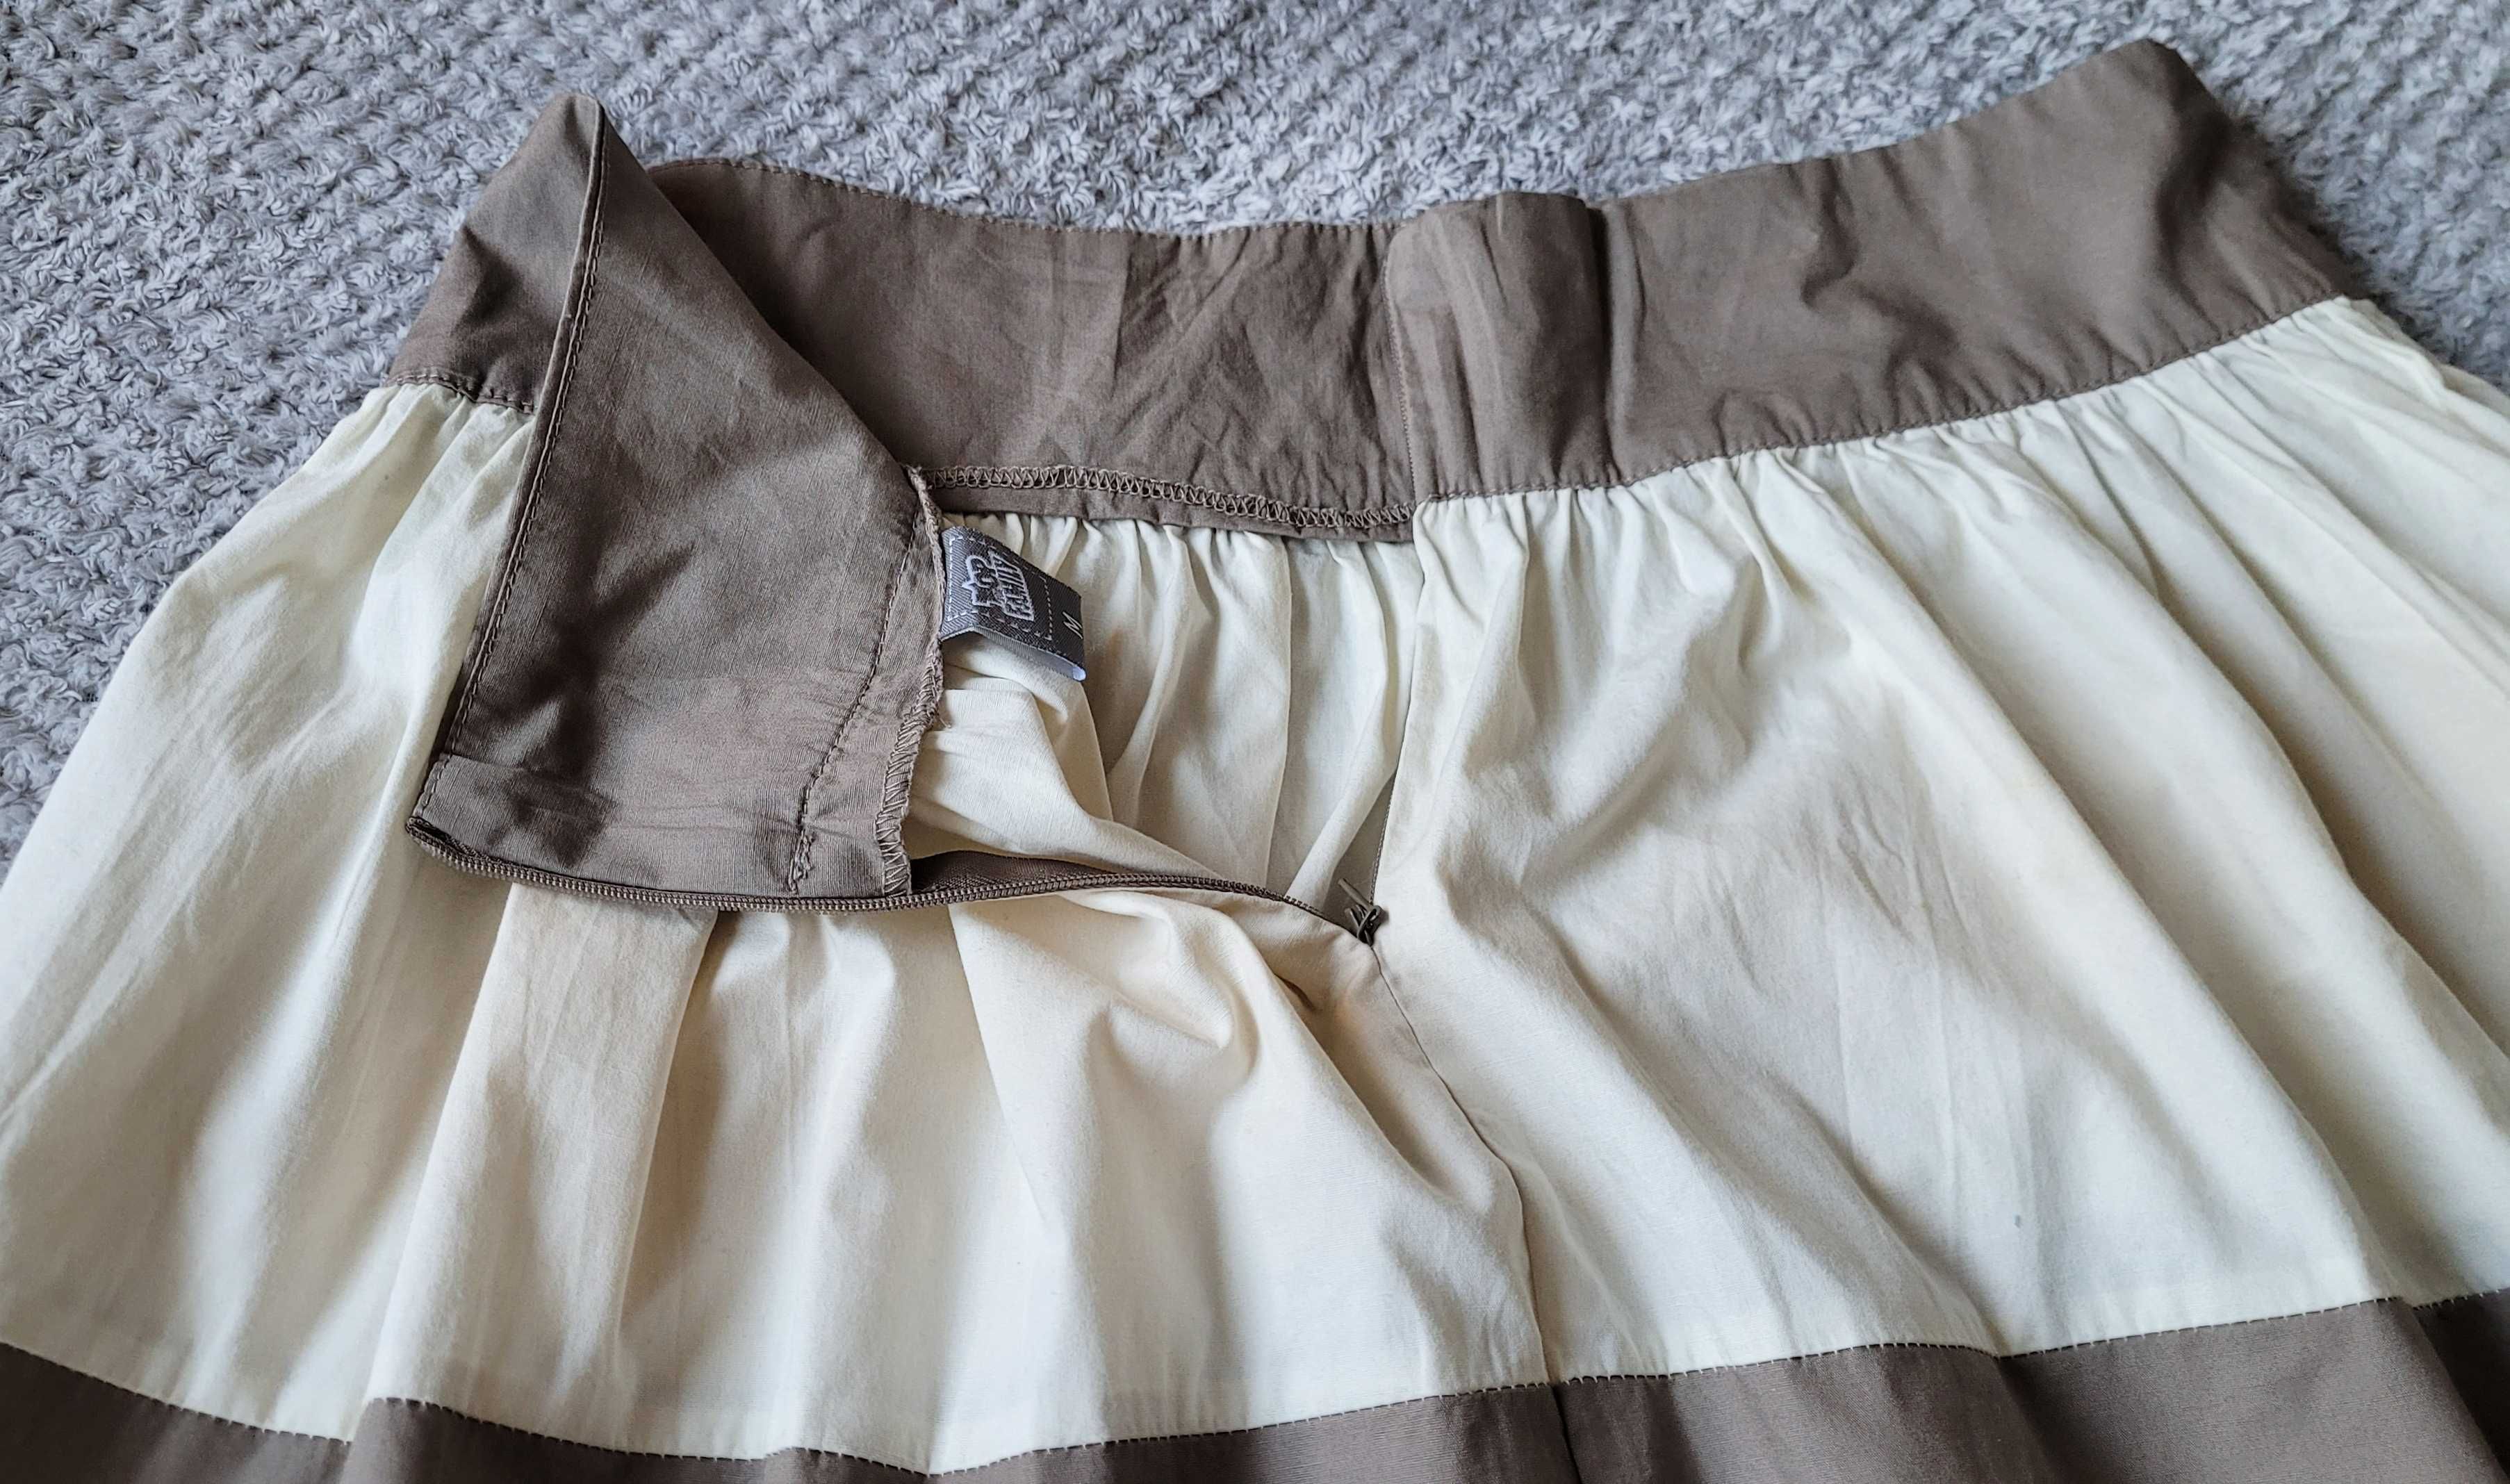 Bawełniana spódnica, krem i beż, rozmiar M